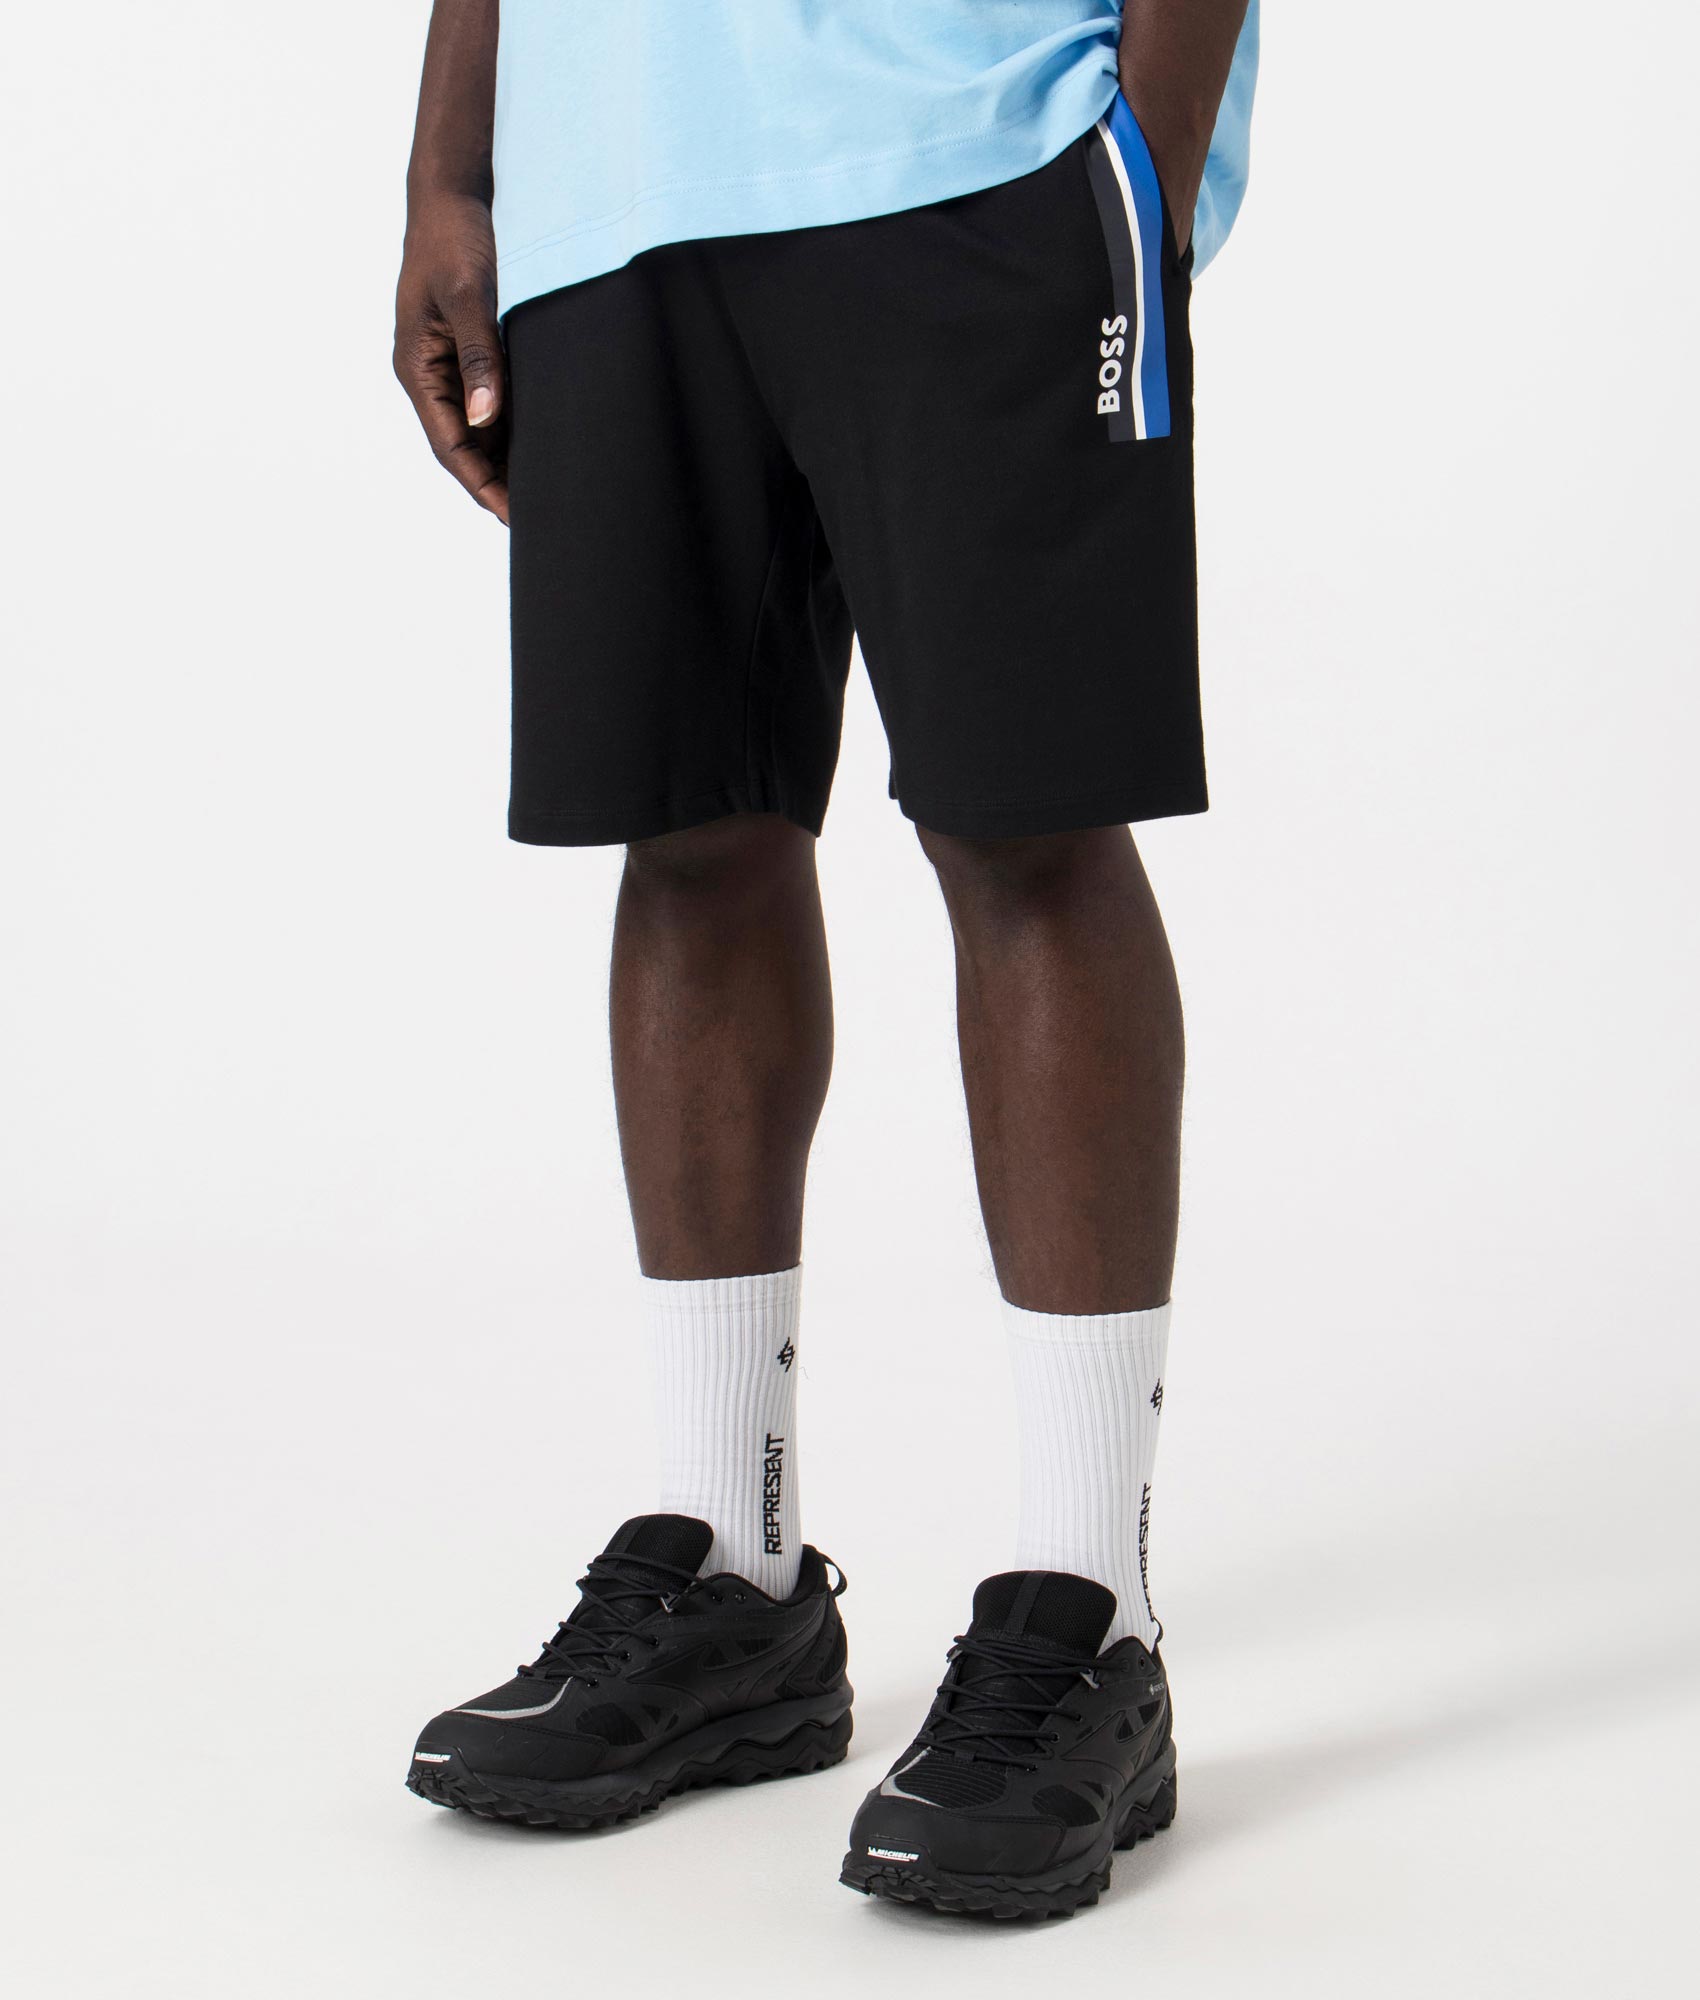 BOSS Mens Authentic Shorts - Colour: 001 Black - Size: XL